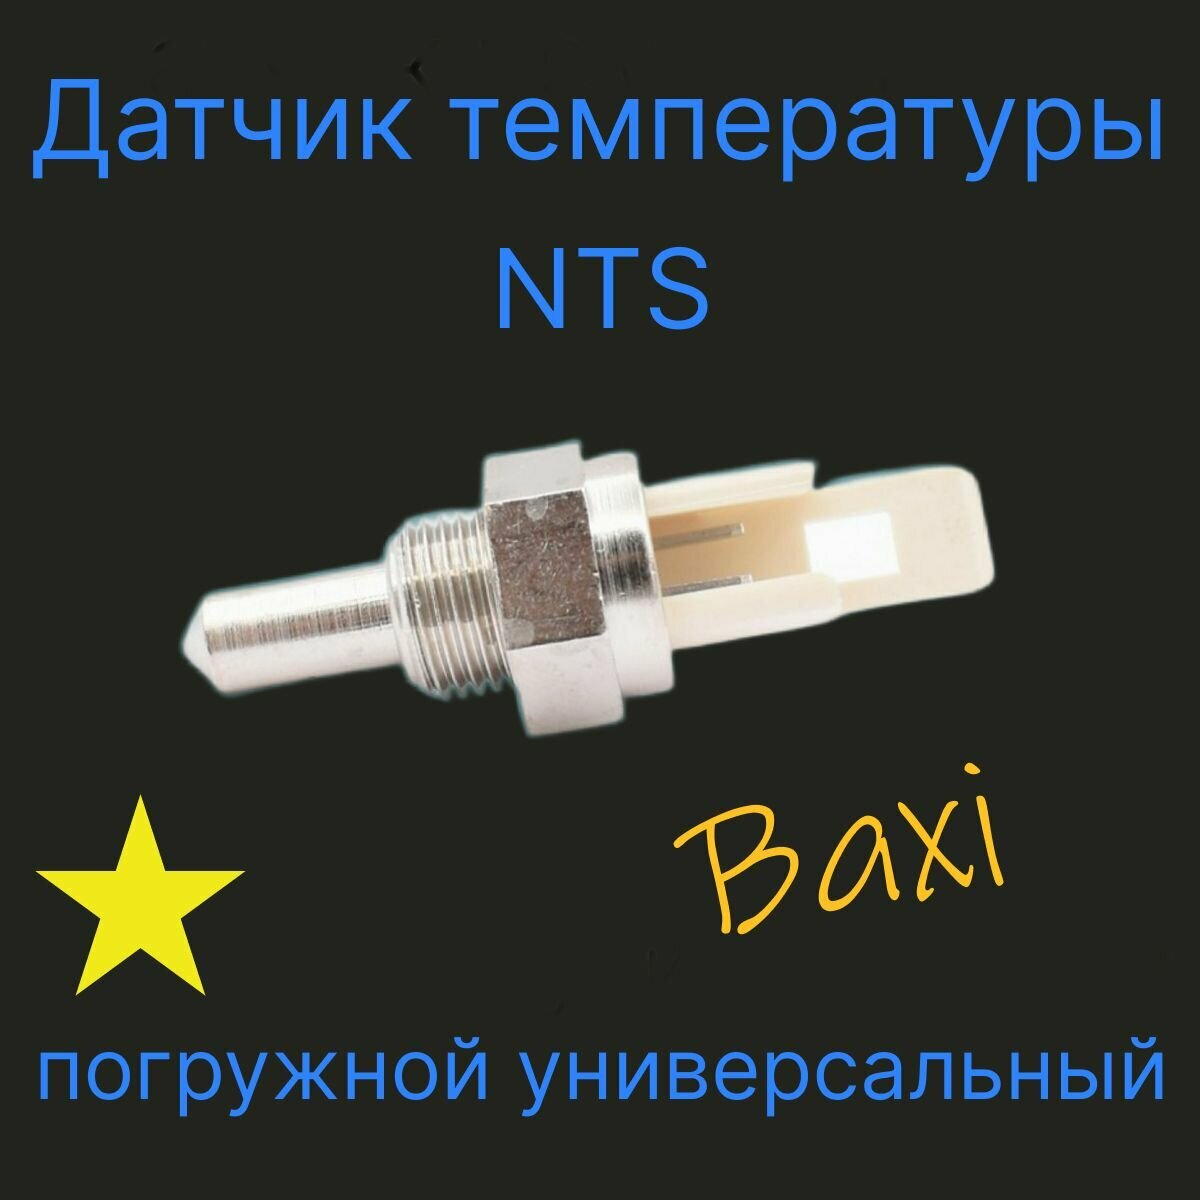 Датчик температуры NTC погружной для Baxi (бакси)